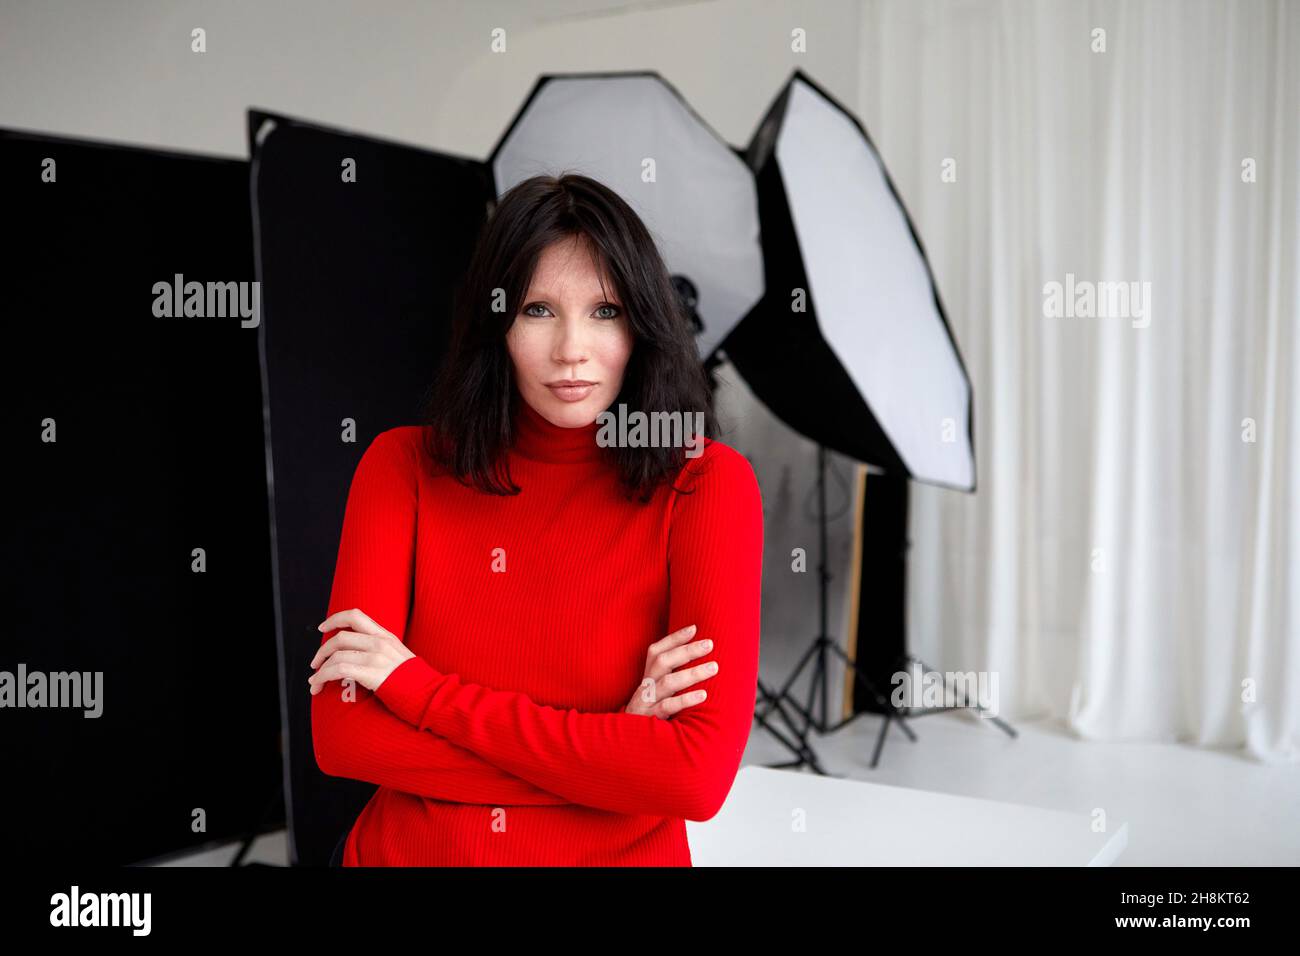 Seriöse Frau im roten Rollkragen, die mit gefalteten Händen im Studio mit Ausrüstung für Fotoaufnahmen steht und die Kamera anschaut Stockfoto